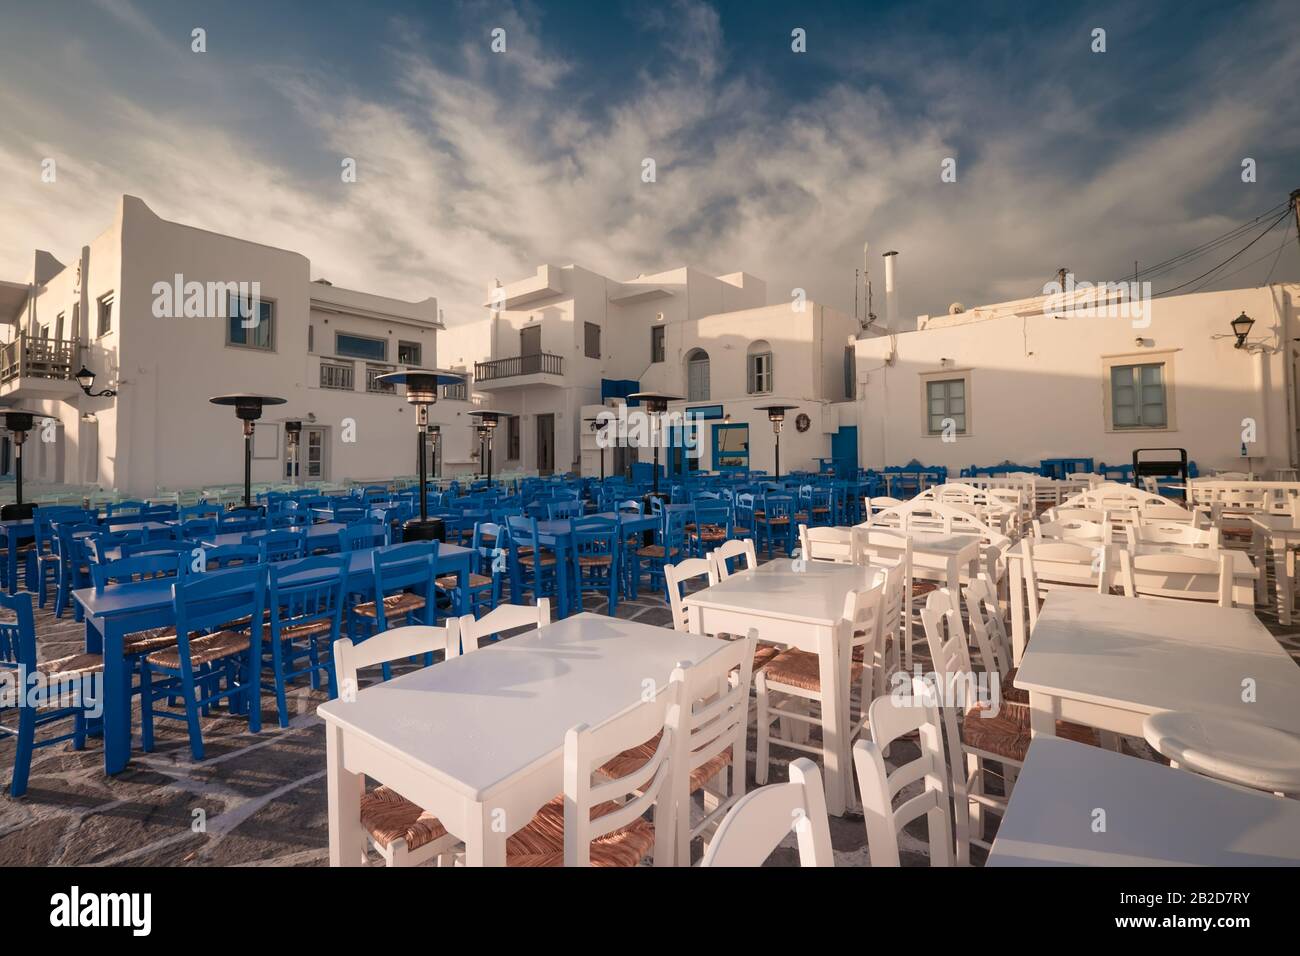 Cafe e ristoranti in una strada stretta incredibile di destinazione popolare sull'isola di Paros. Grecia. Architettura tradizionale e colori del cit mediterraneo Foto Stock